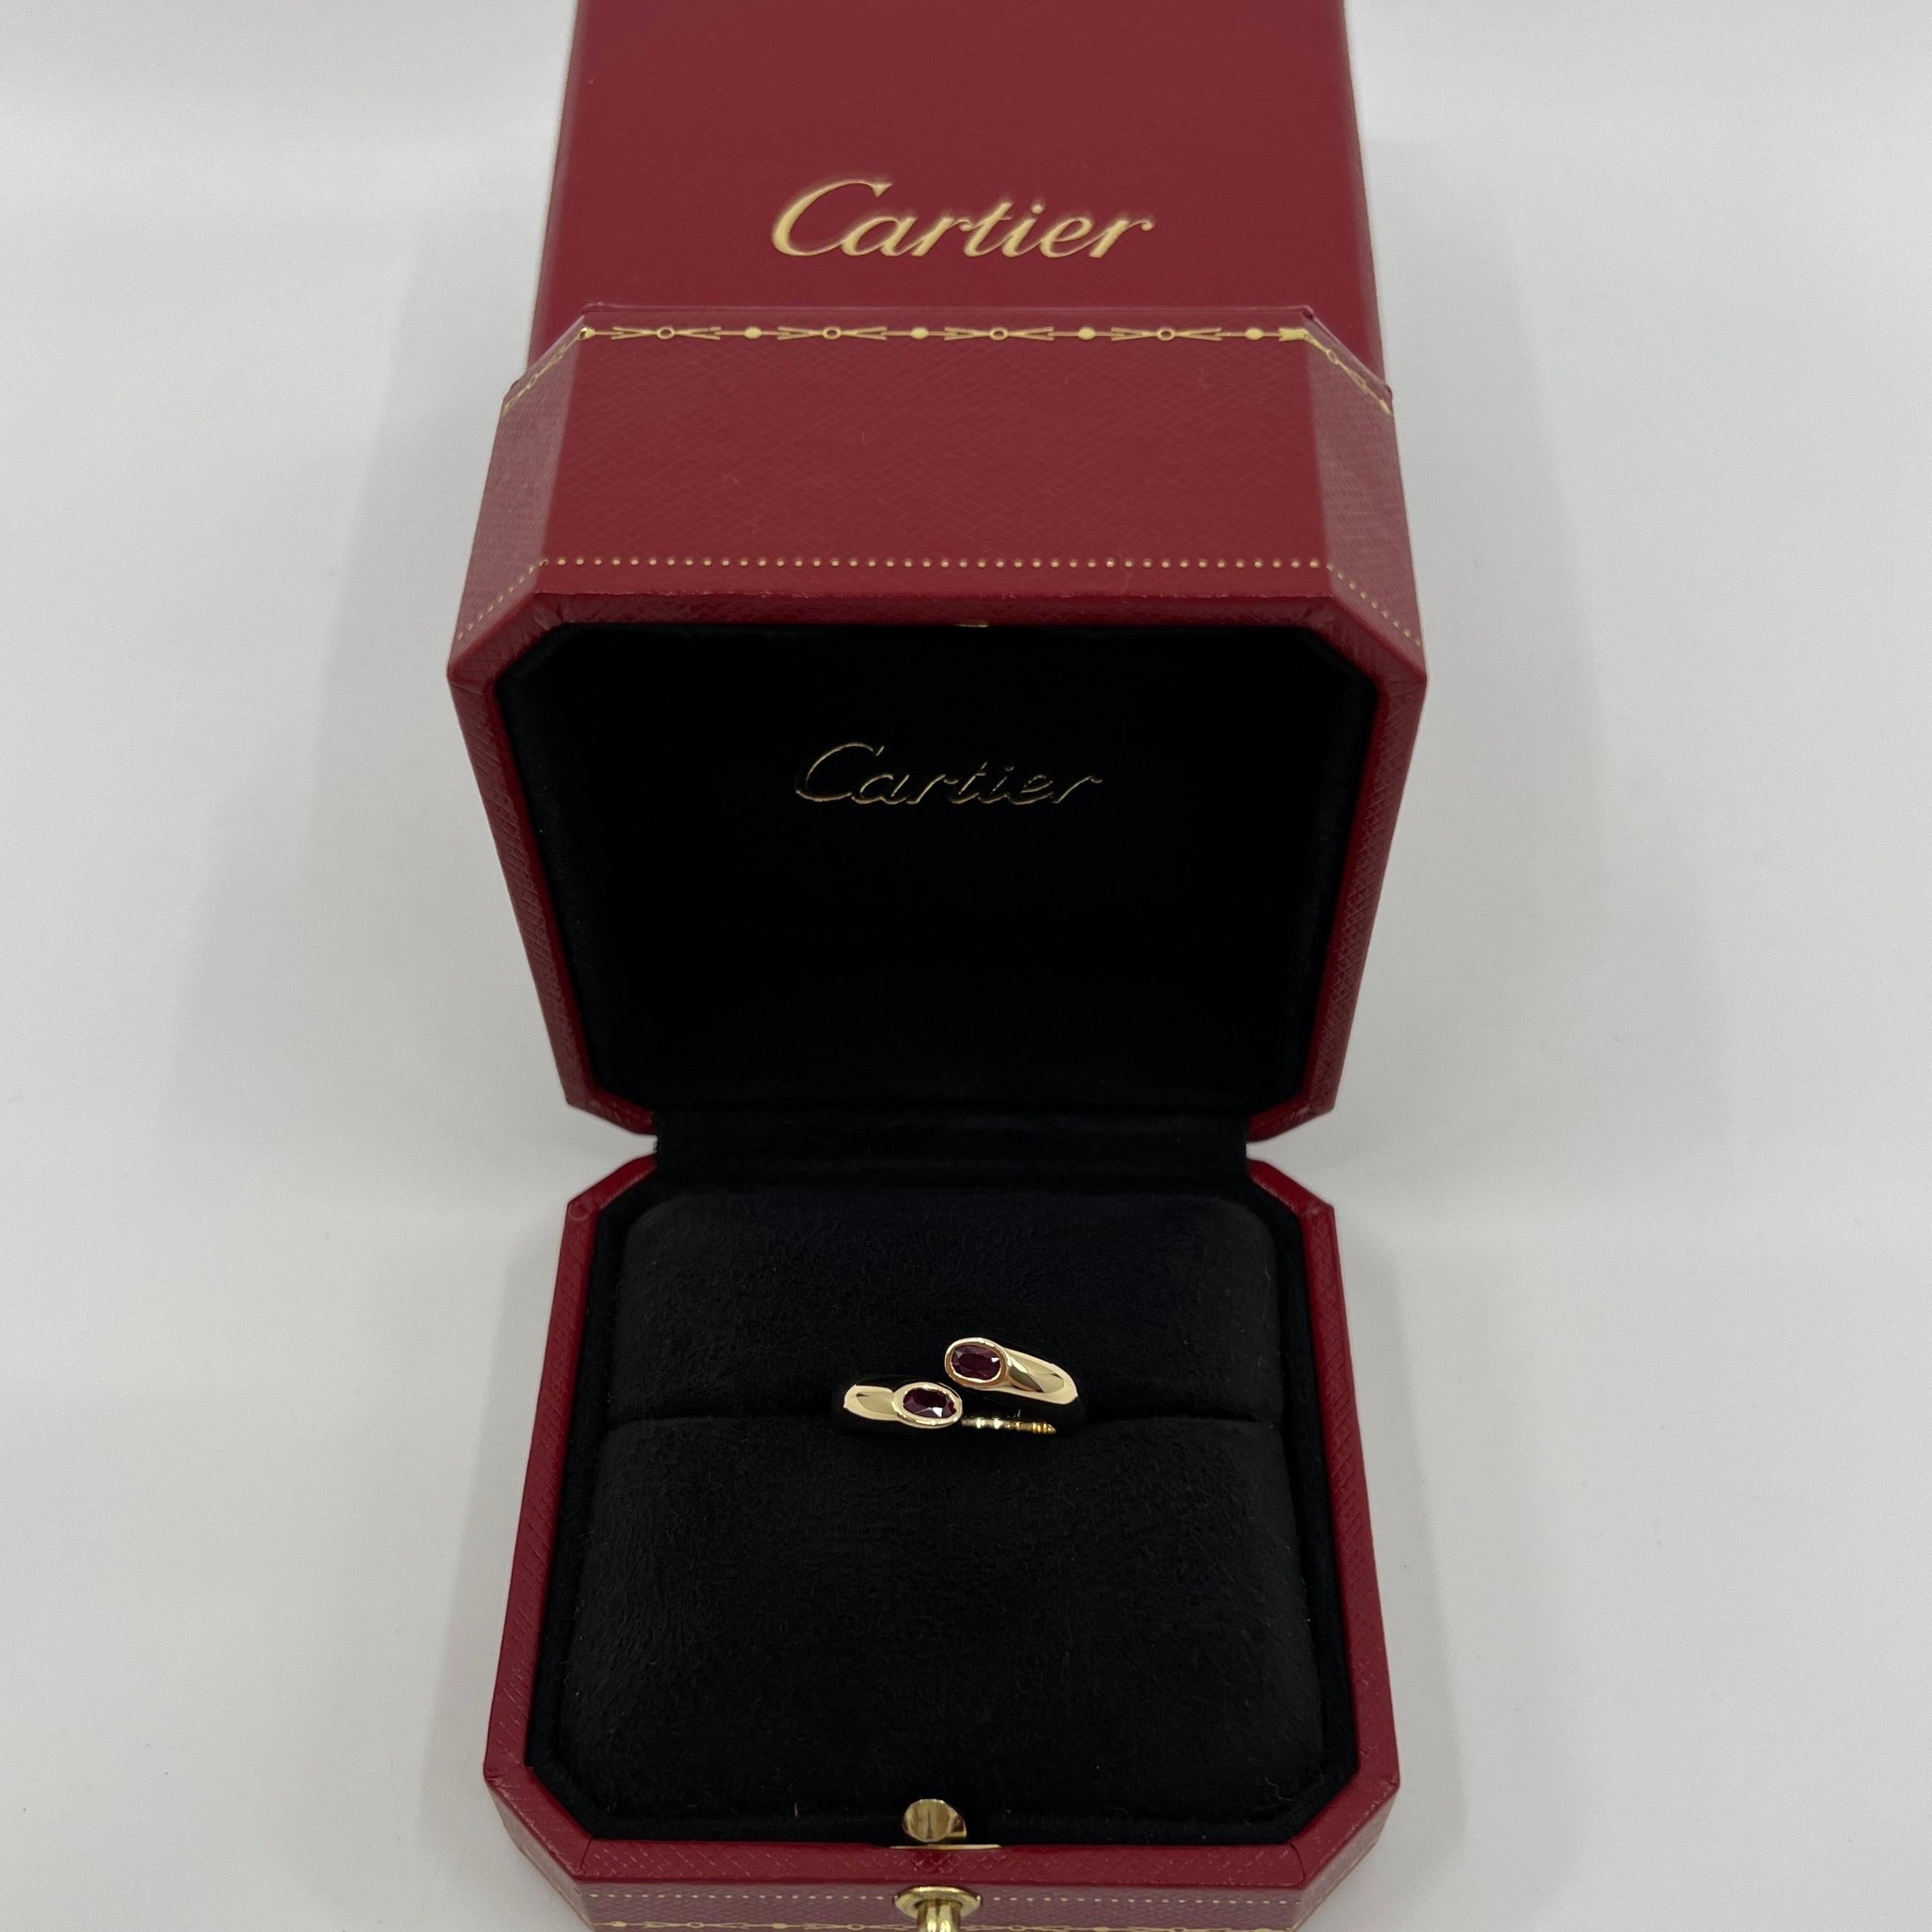 Vintage Cartier Oval Cut Red Ruby 18k Gelbgold Split Bypass Ring.

Atemberaubender Ring aus Gelbgold, besetzt mit 2 feinen tiefroten Rubinen im Ovalschliff. Edle Schmuckhäuser wie Cartier verwenden nur die feinsten Edelsteine, und diese Rubine sind